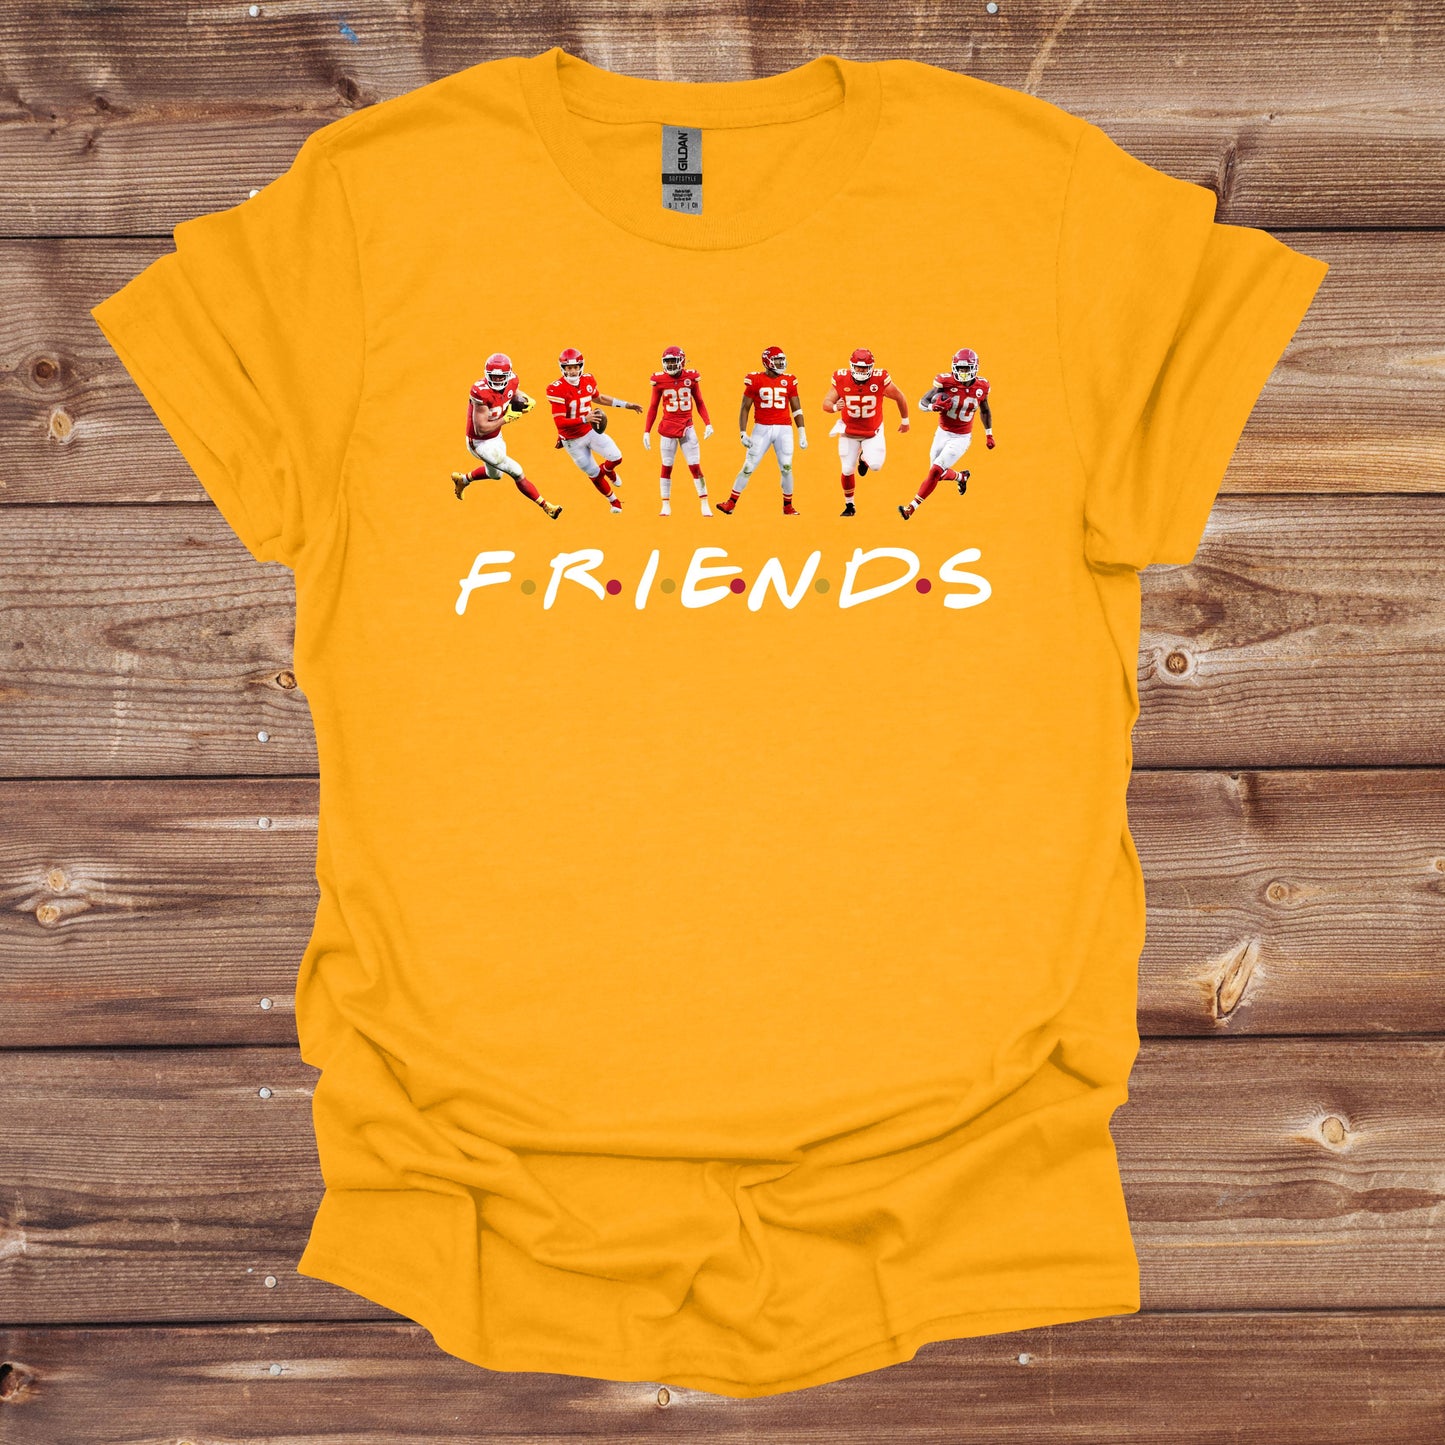 Football T-Shirt - Kansas City Chiefs - Chiefs Friends - Adult Tee Shirts - Chiefs - Sports